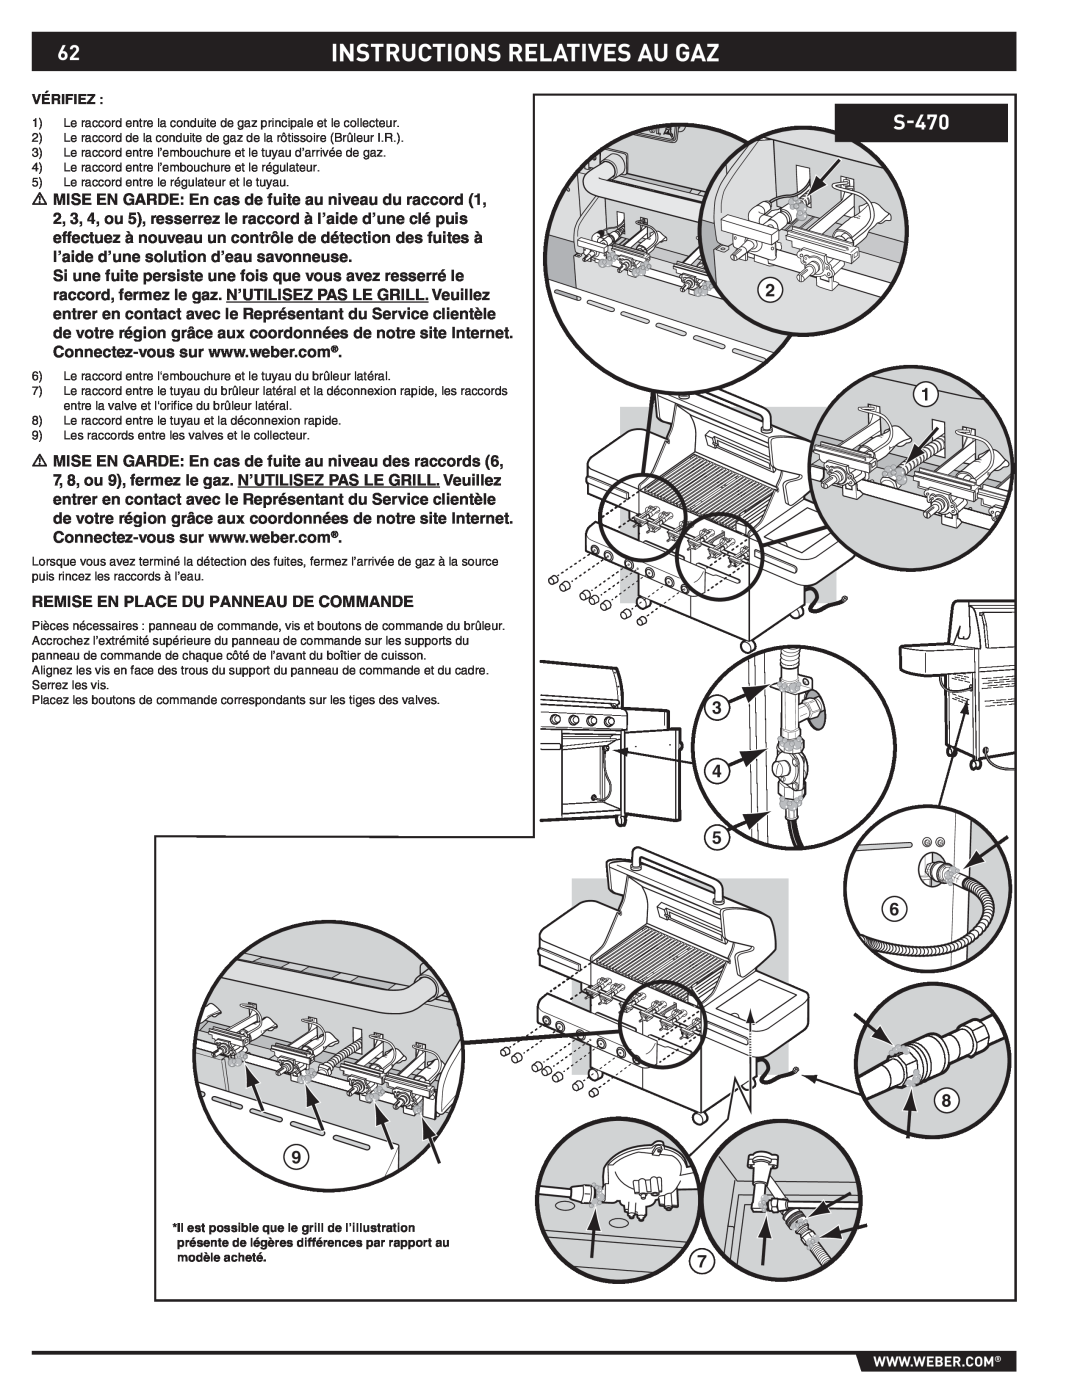 Weber S-470TM manual Instructions Relatives Au Gaz, Remise En Place Du Panneau De Commande, Vérifiez 